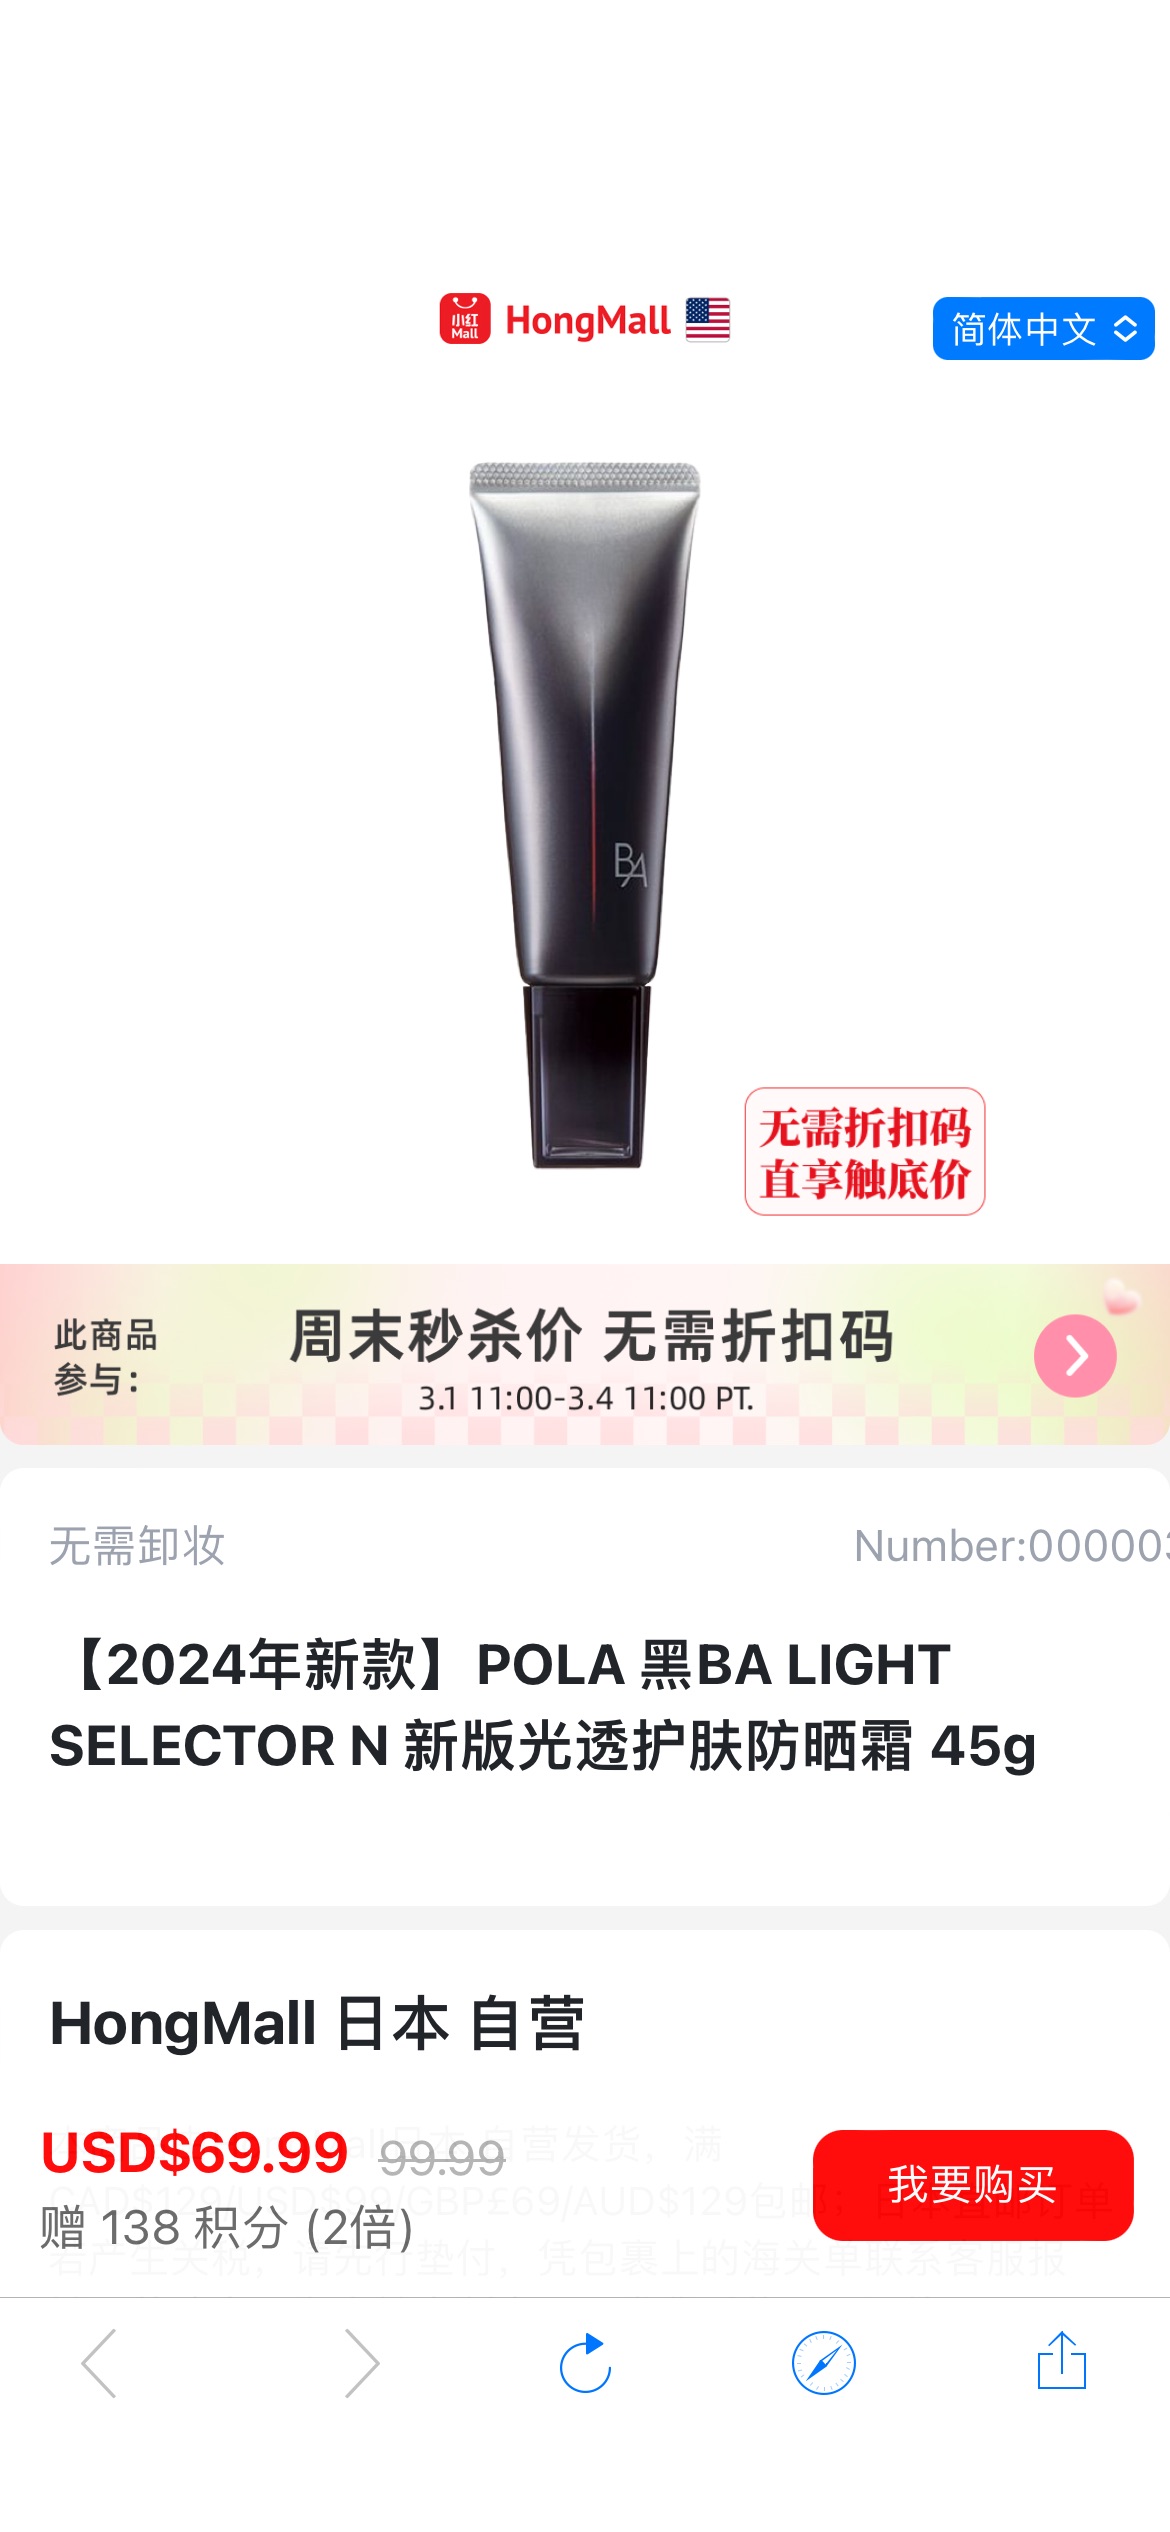 【2024年新款】POLA 黑BA LIGHT SELECTOR N 新版光透护肤防晒霜 45g